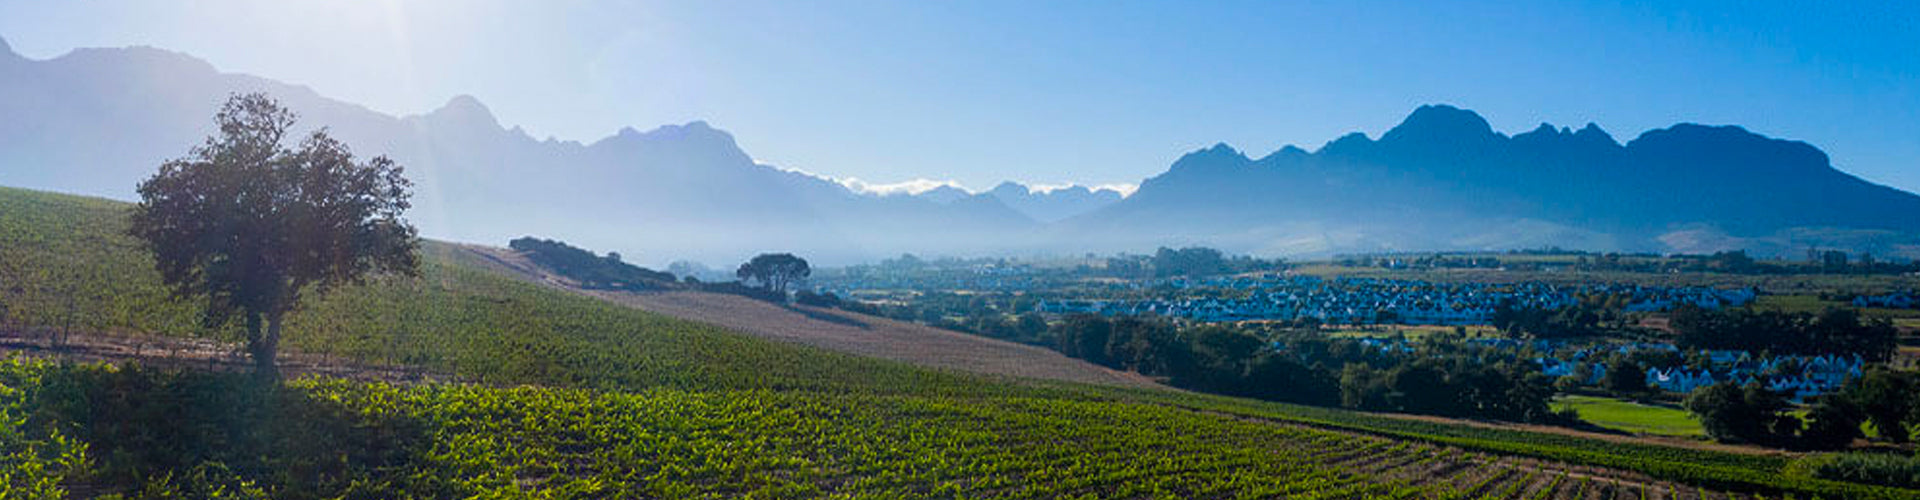 Kleine Zalze Vineyards in Stellenbosch, South Africa